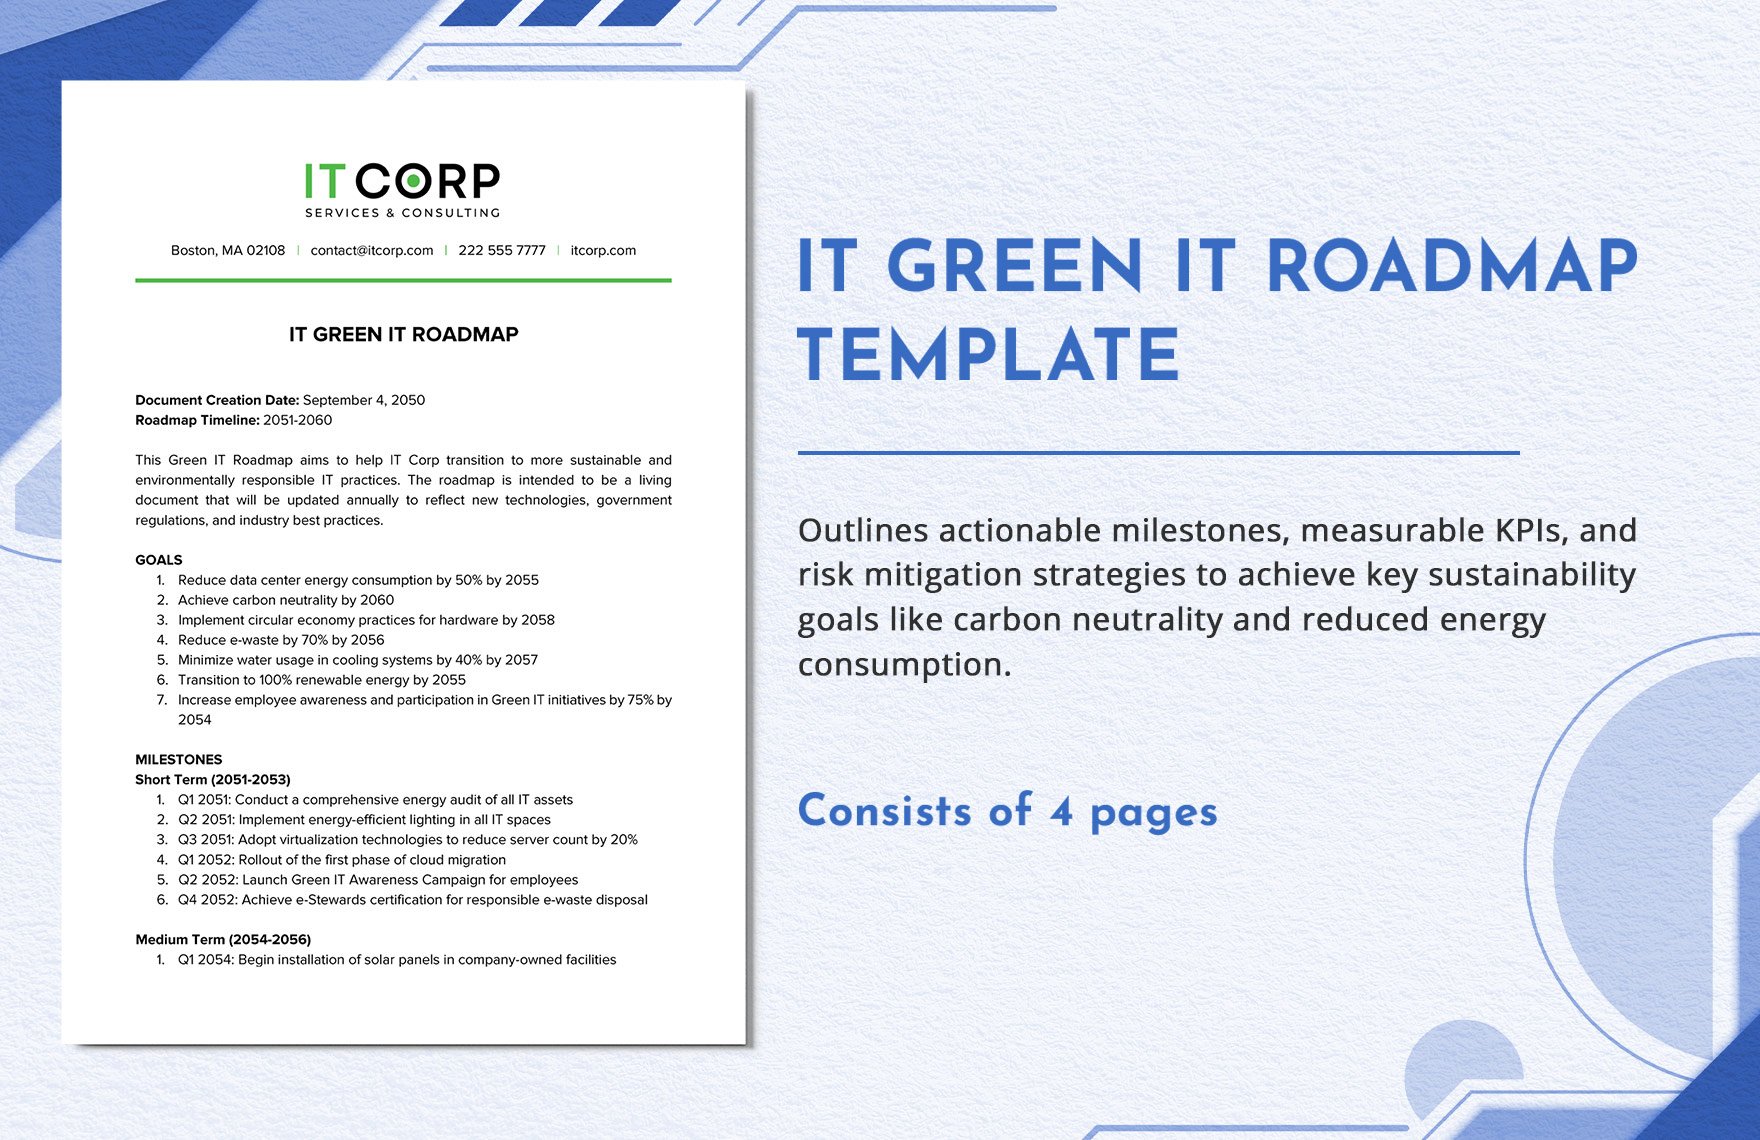 IT Green IT Roadmap Template